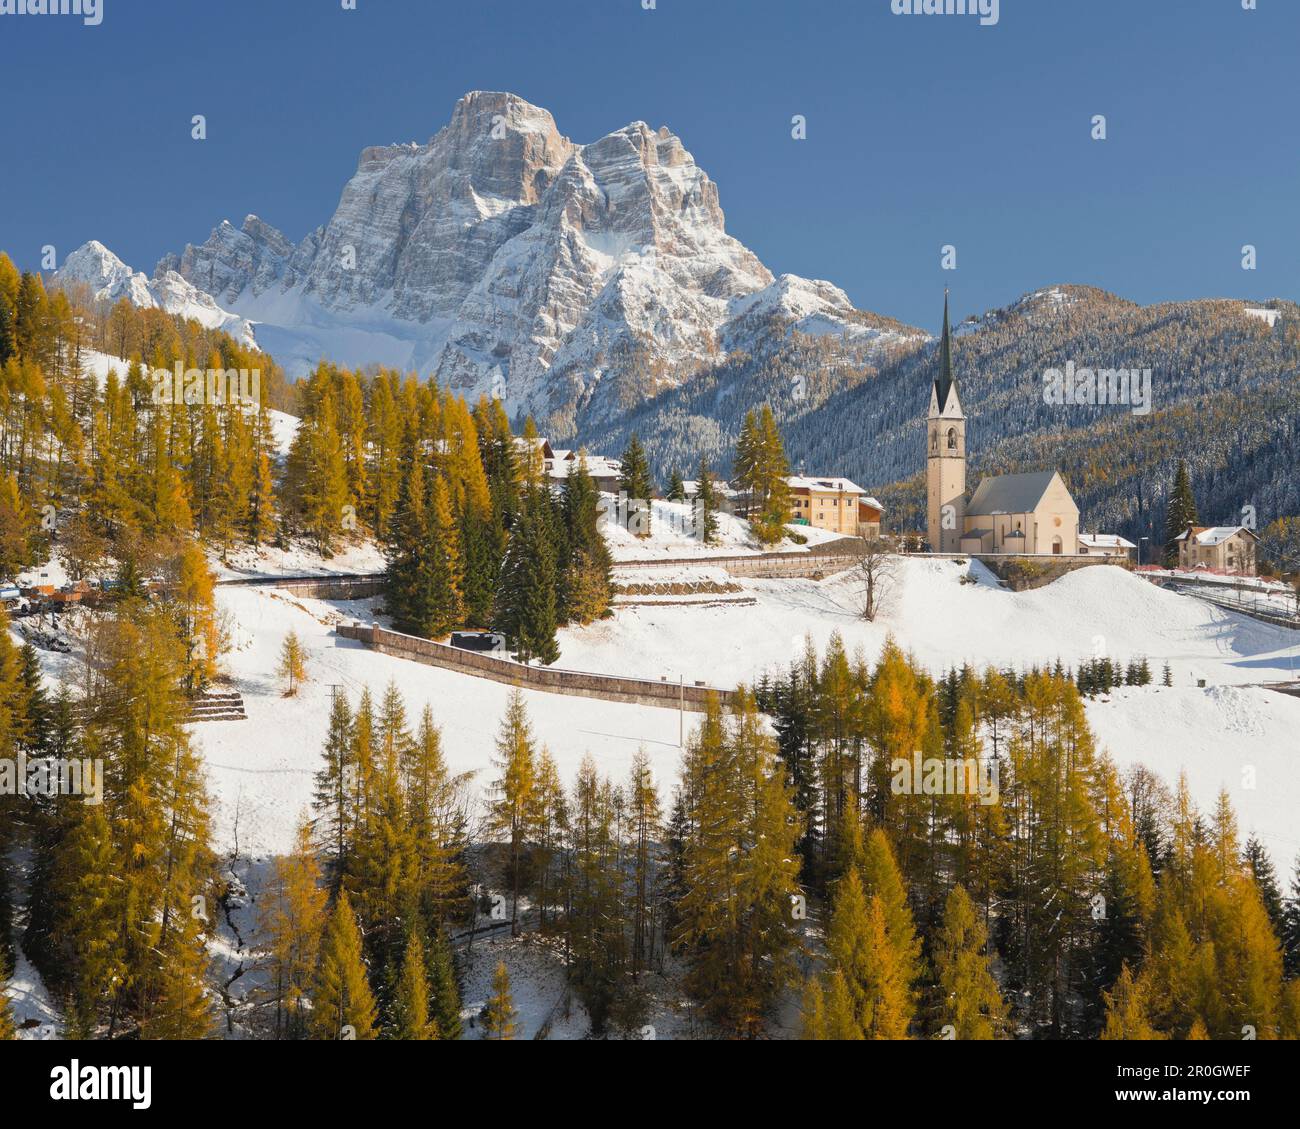 Church at the village Selva di Cadore in winter, Monte Pelmo, Veneto, Italy, Europe Stock Photo